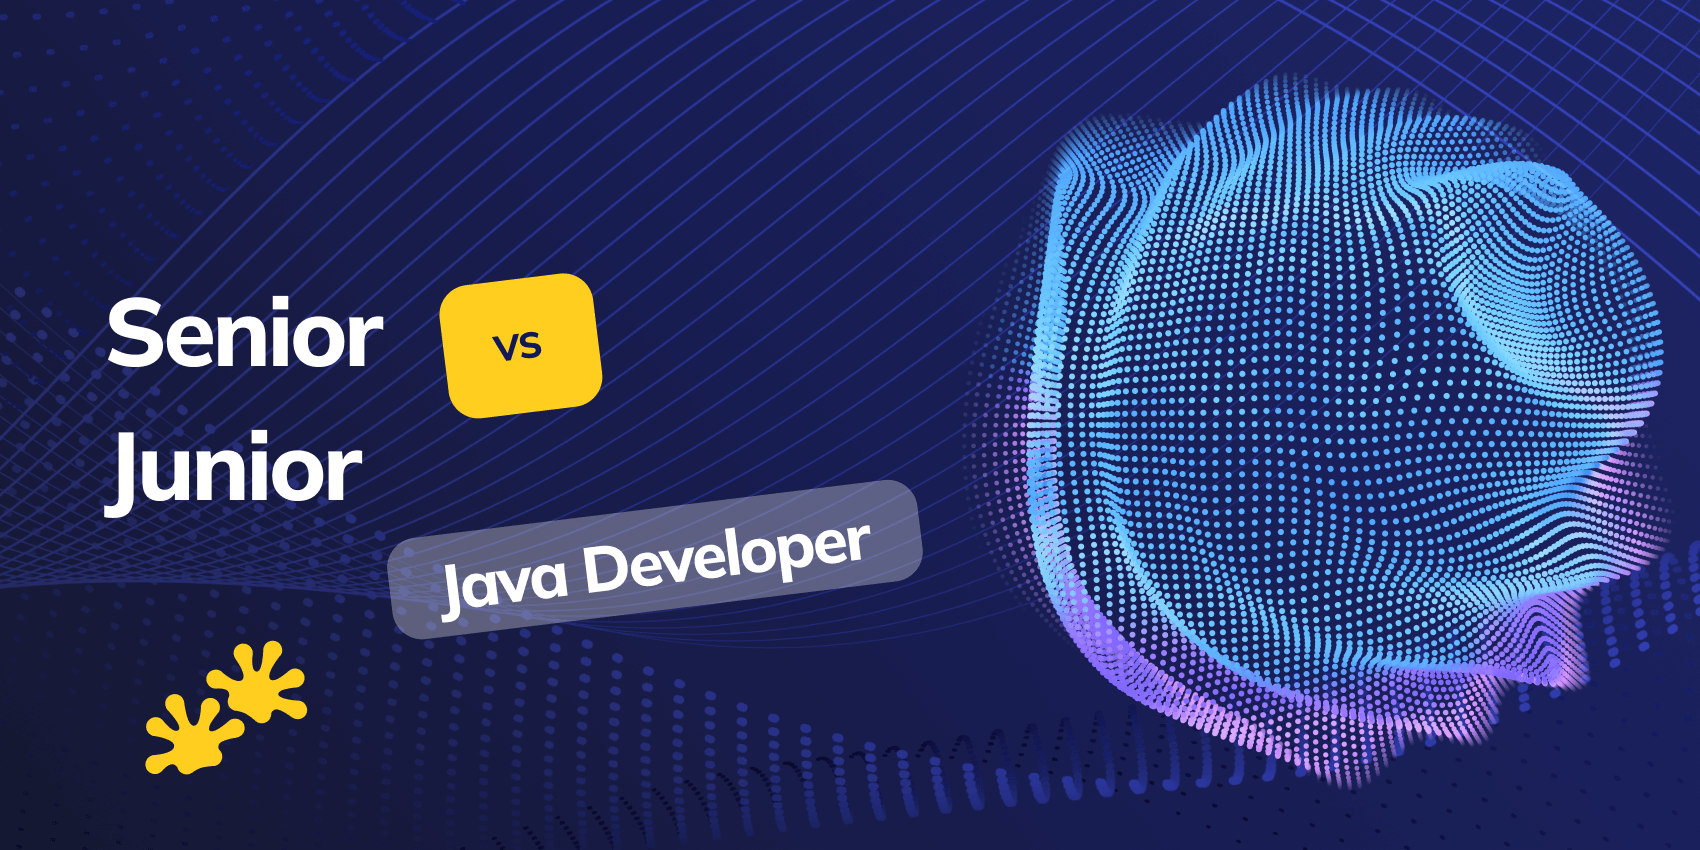 Senior Java Developer vs Junior Java Developer